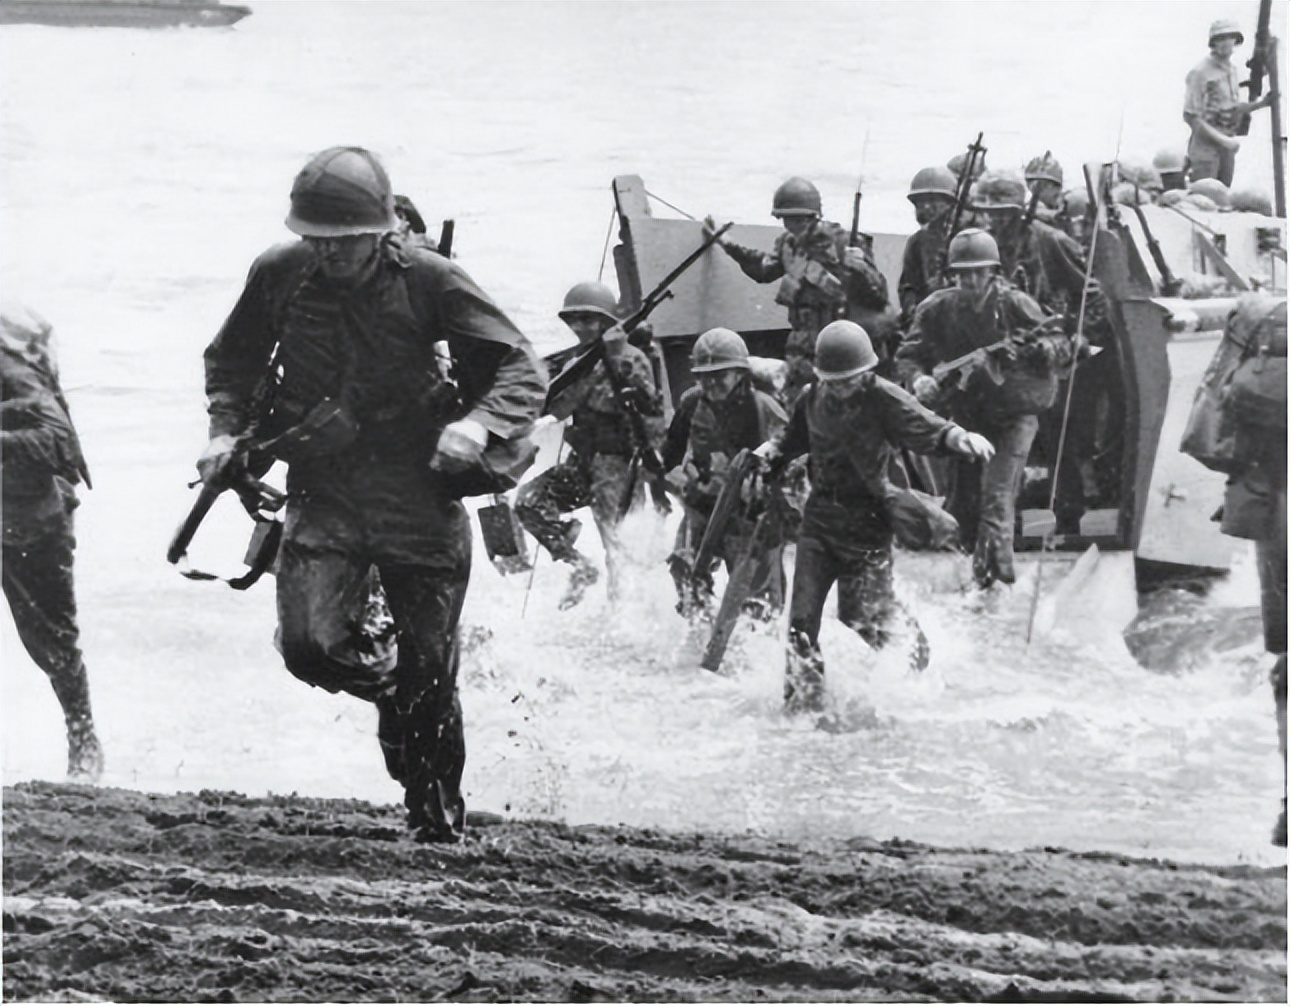 冲绳岛战役有多惨烈?美军杀红眼,10万日军被打得一个不剩-热门资讯